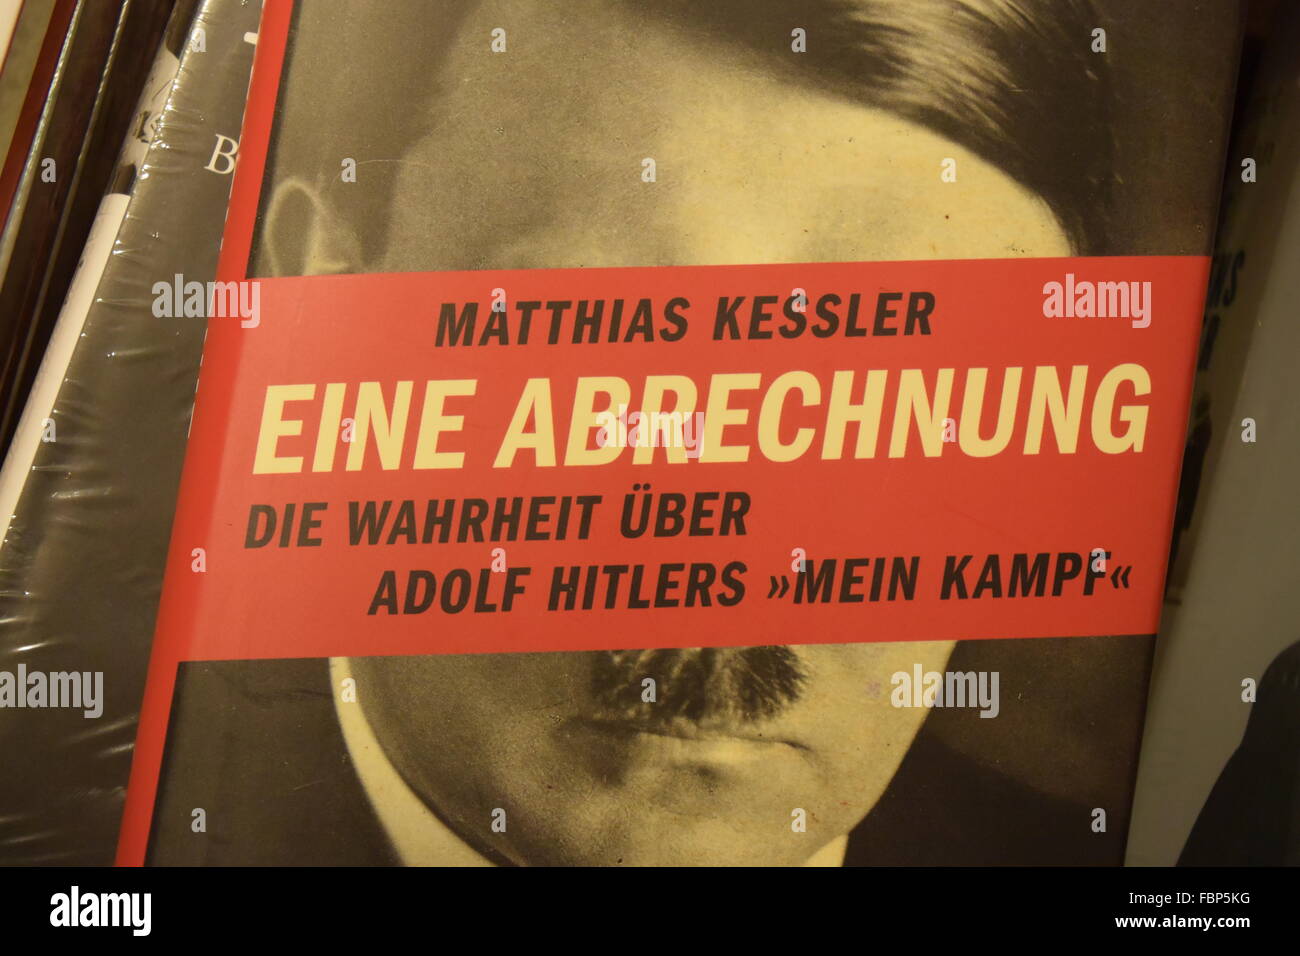 Couverture du livre 'Eine Abrechnung' de Matthias Kessler. Un commentaire critique du livre 'Mein Kampf' d'Adolf Hitler. Banque D'Images